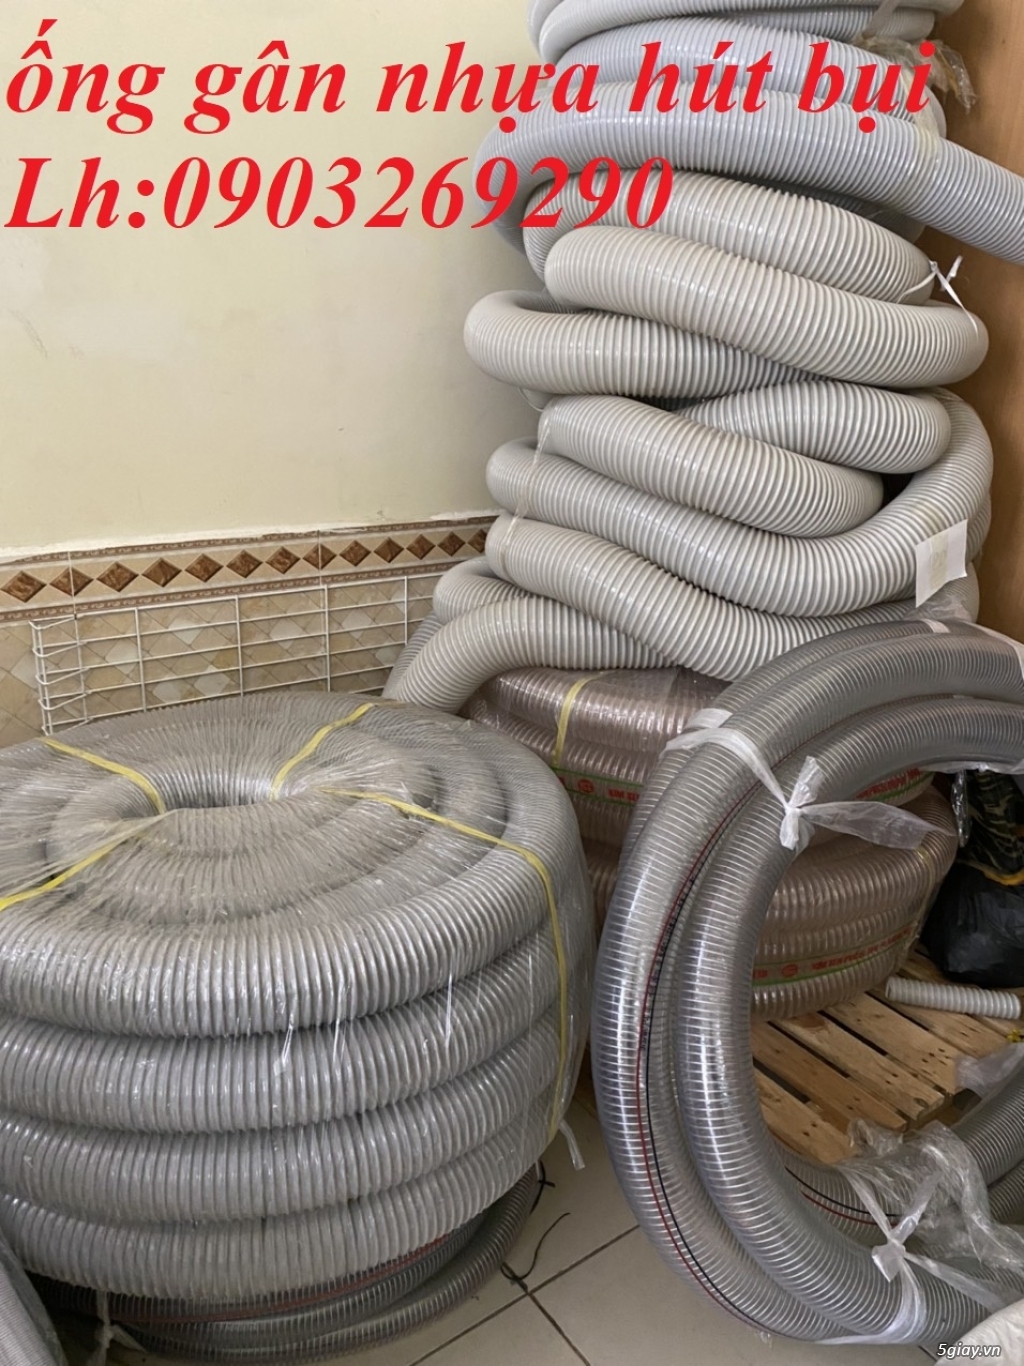 Cung cấp ống công nghiệp - ống hút bụi - khí - nhiệt D100 - D114- D120 - 16